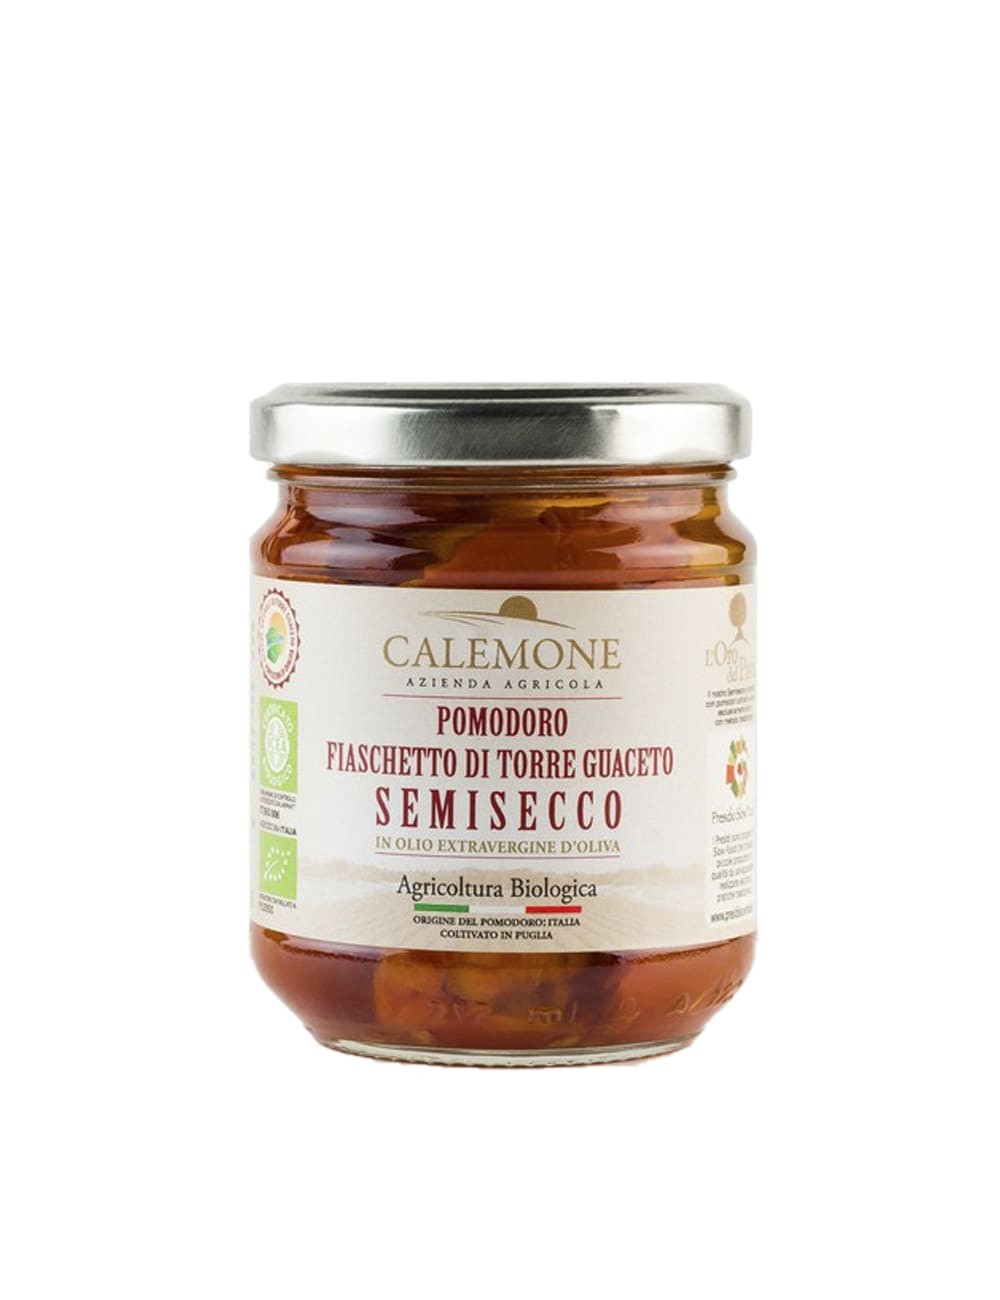 pomodoro-semisecco-fiaschetto-torre-guaceto_calemone